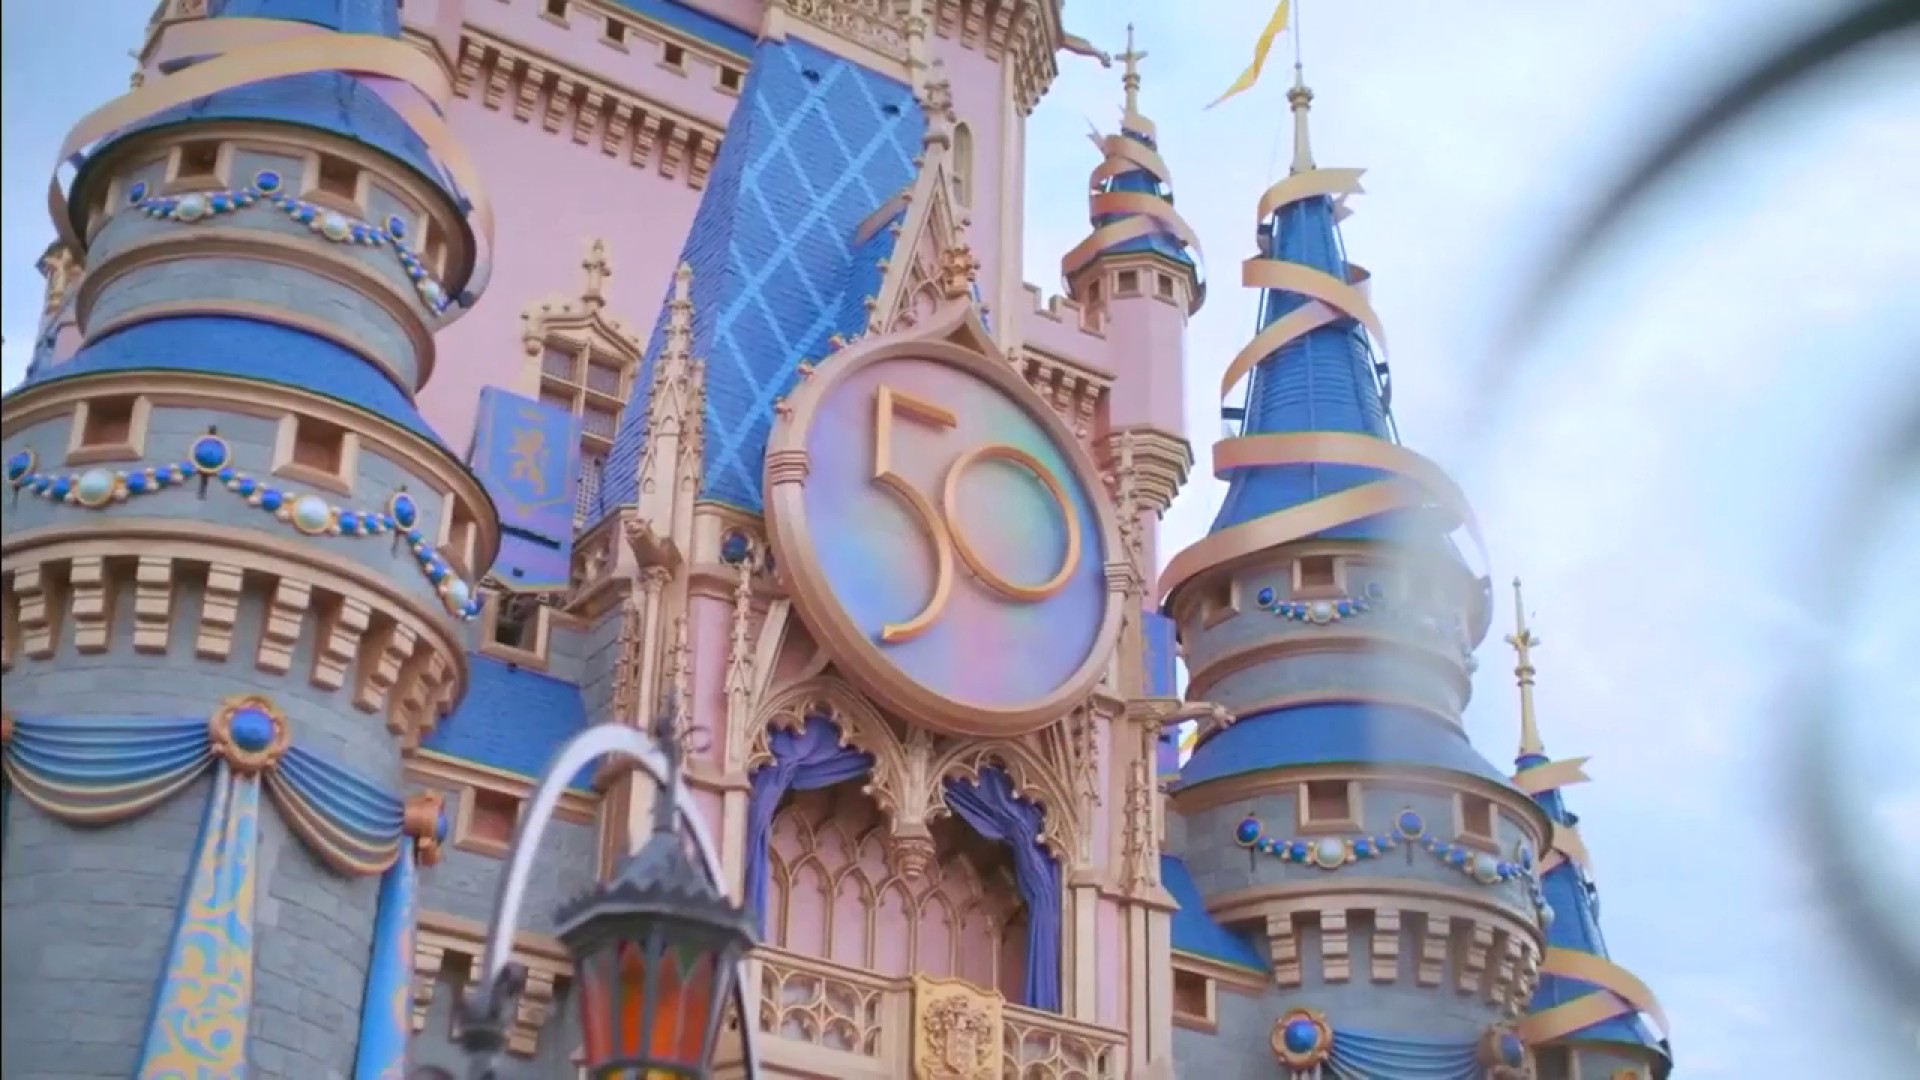 Tháp cổ tích của nàng Cinderella luôn là điểm nhấn của Disney World, được đón tiếp bởi hàng triệu khách du lịch mỗi năm. Hãy chiêm ngưỡng hình ảnh tuyệt đẹp của Tháp Cinderella và cùng tận hưởng những phút giây thăng hoa tuyệt vời tại vương quốc đầy phép thuật này.